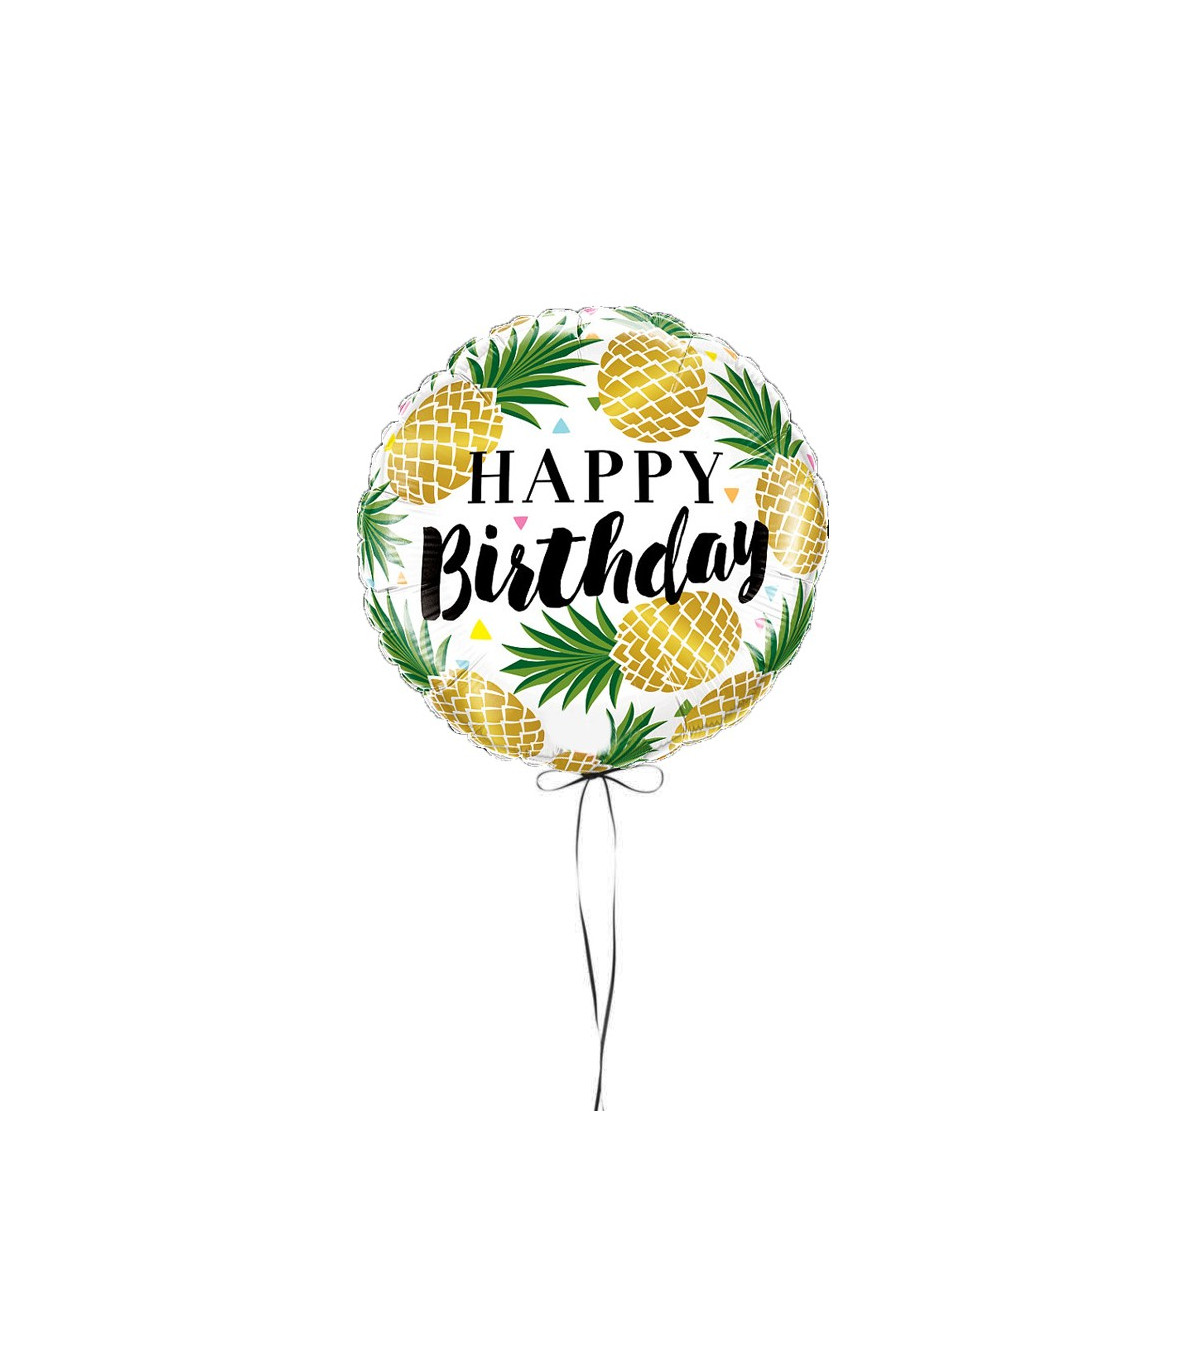 Ballon anniversaire - Livraison cadeau D'lys couleurs